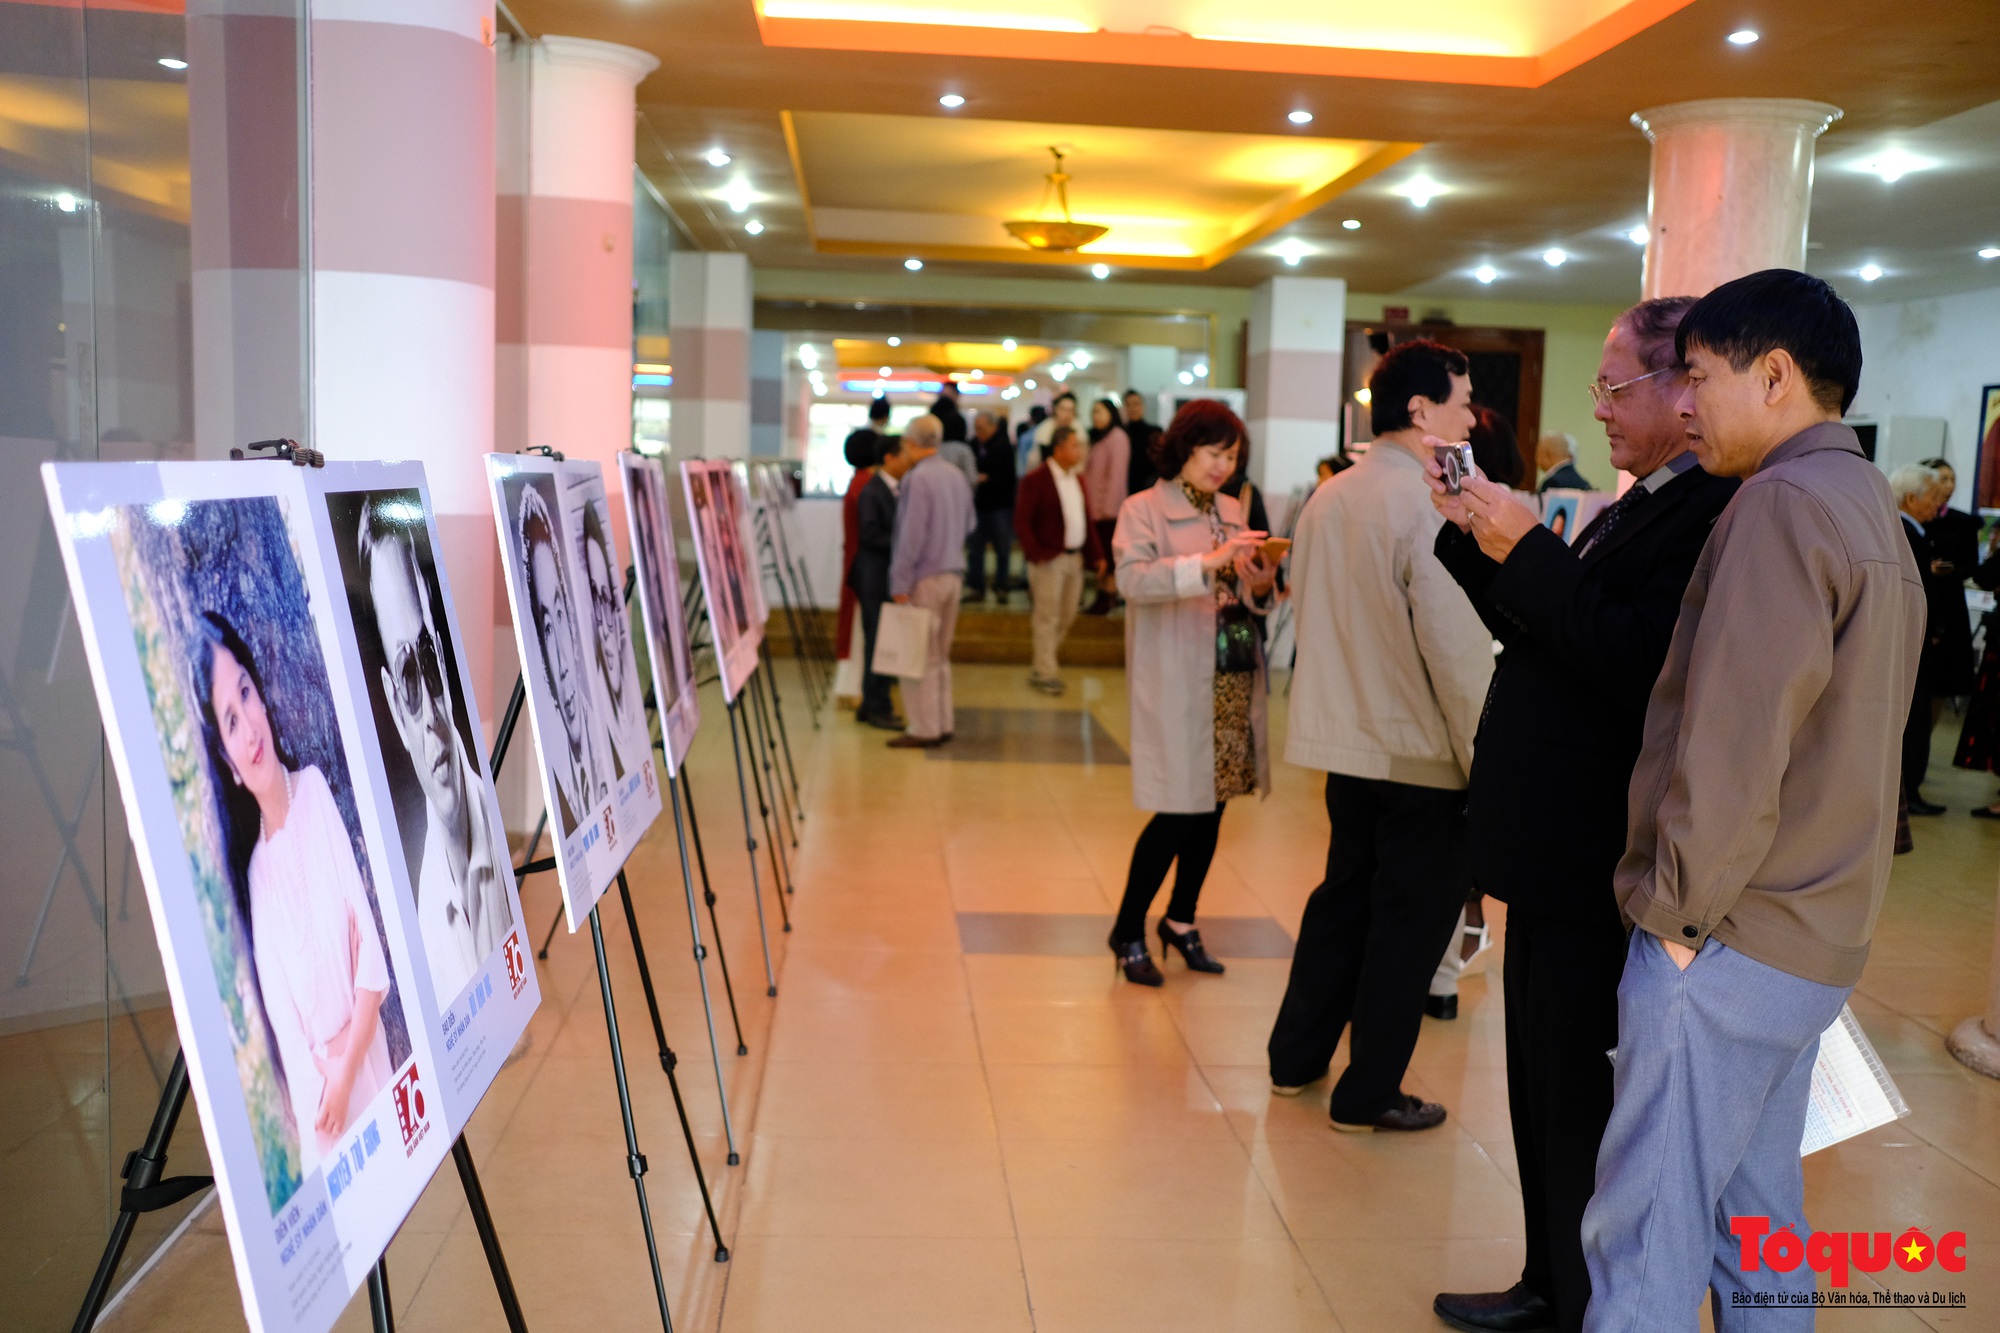 Hơn 200 tư liệu, hiện vật quý được trưng bày kỷ niệm 70 năm Điện ảnh Cách mạng Việt Nam - Ảnh 12.